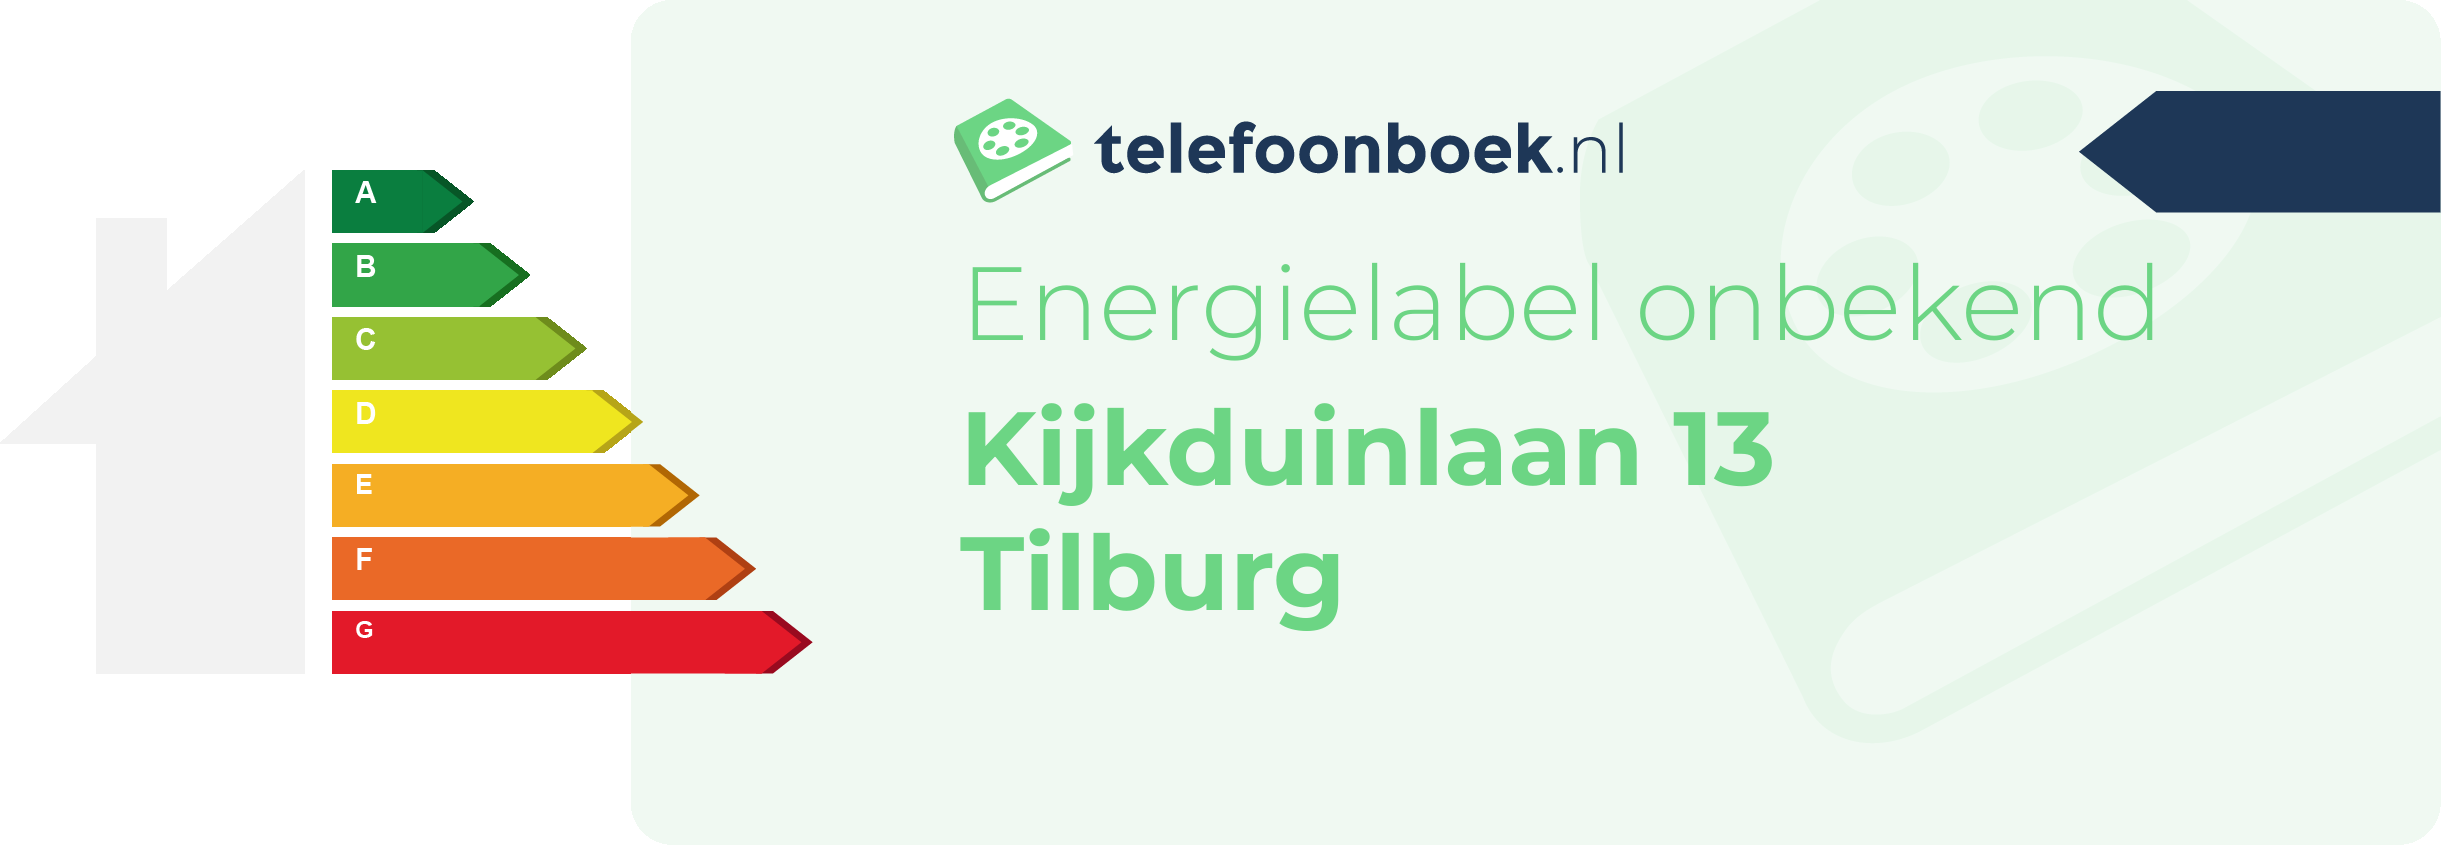 Energielabel Kijkduinlaan 13 Tilburg